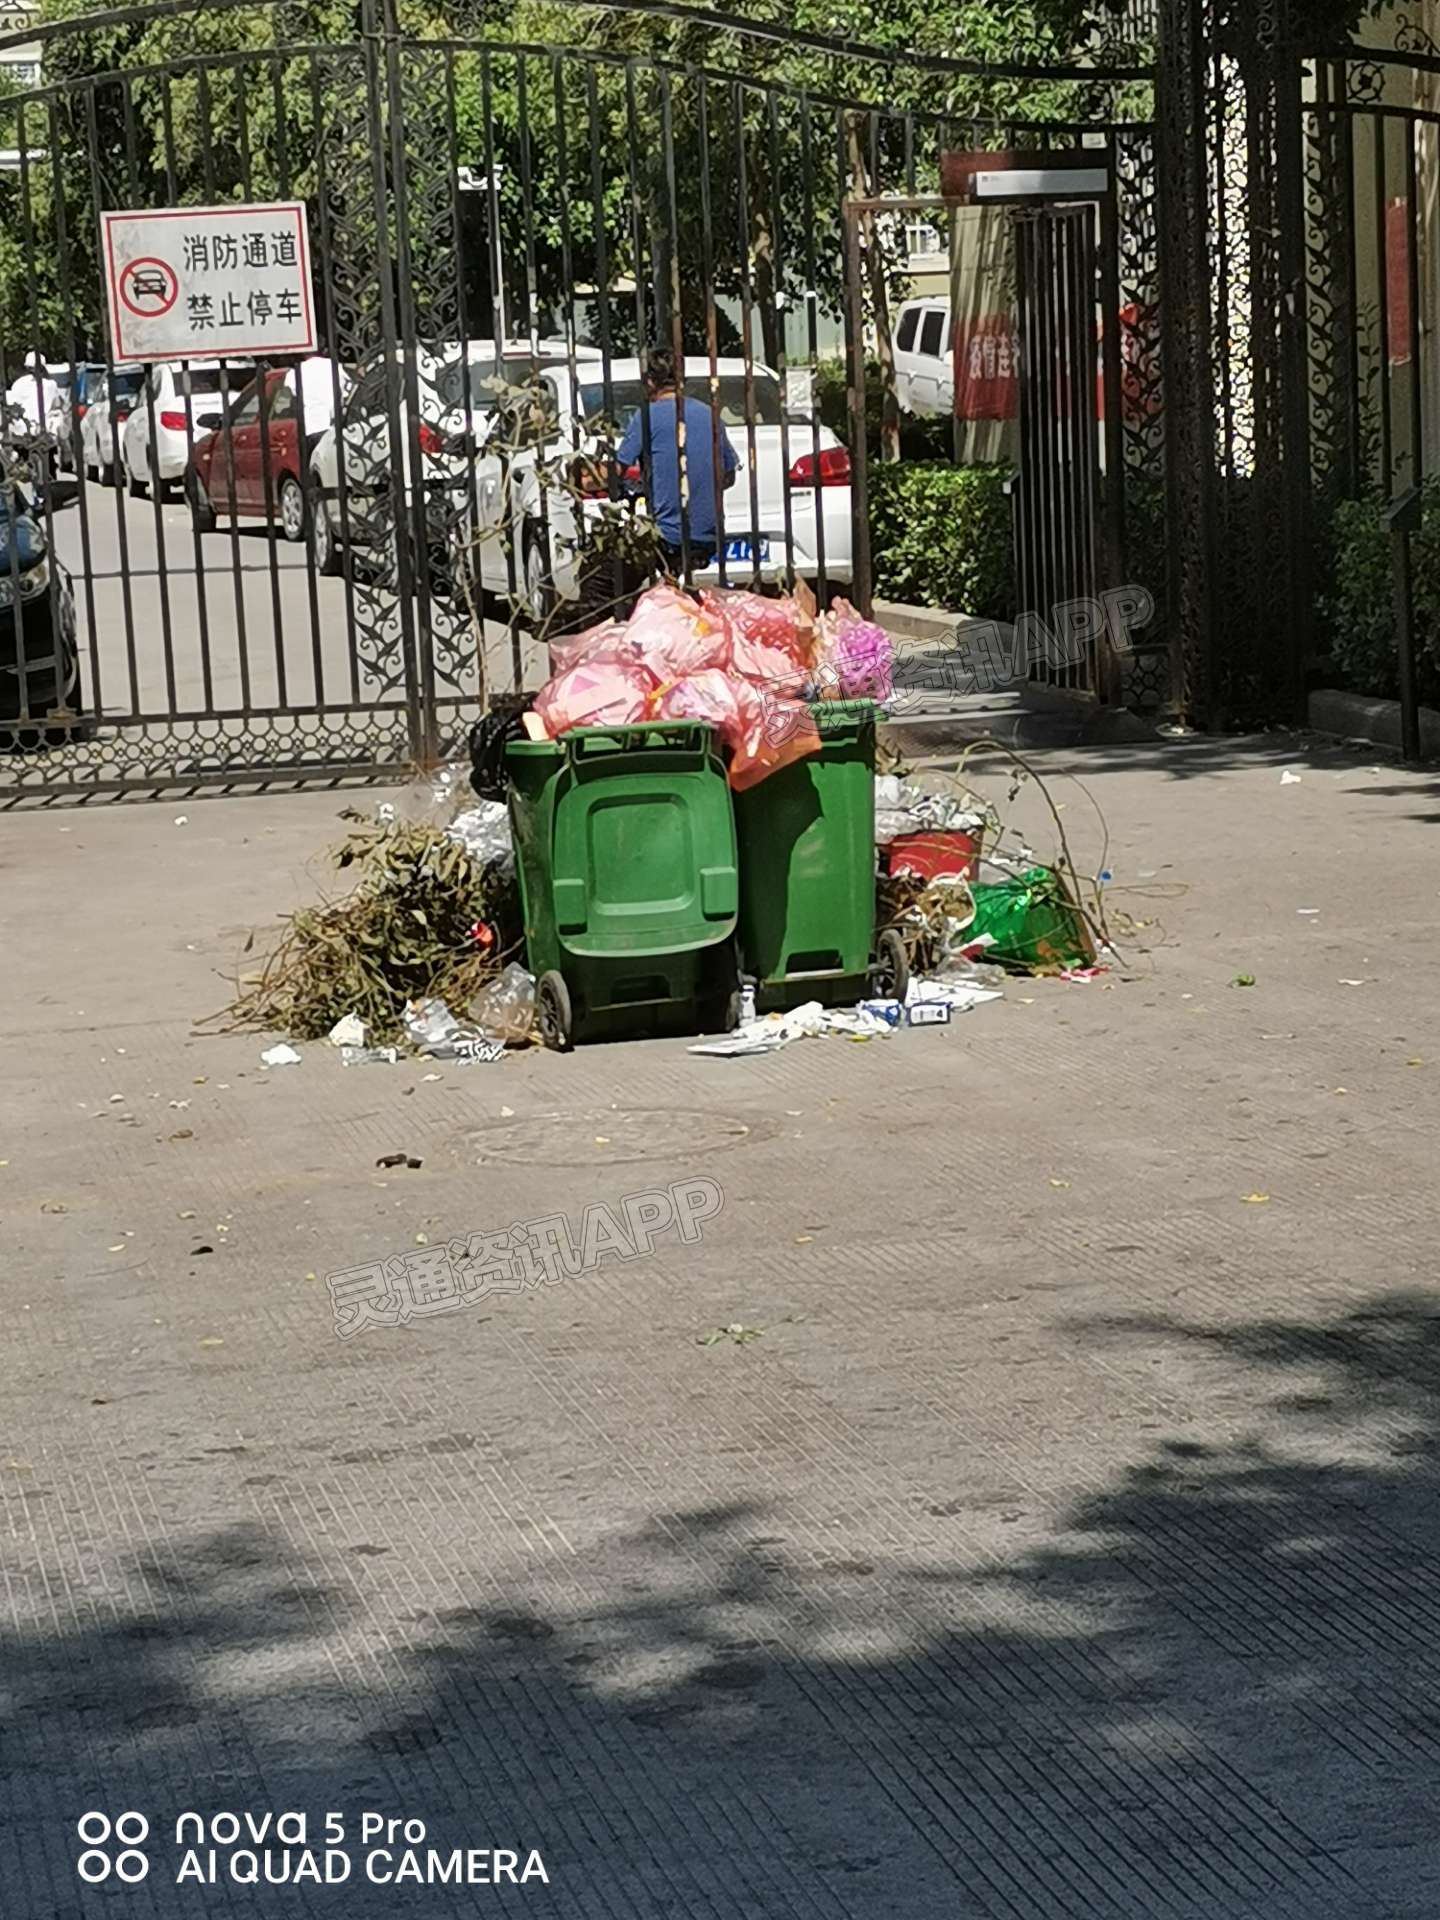 “米乐M6官网”运城四季绿城商业街成垃圾堆~究竟是哪里出了问